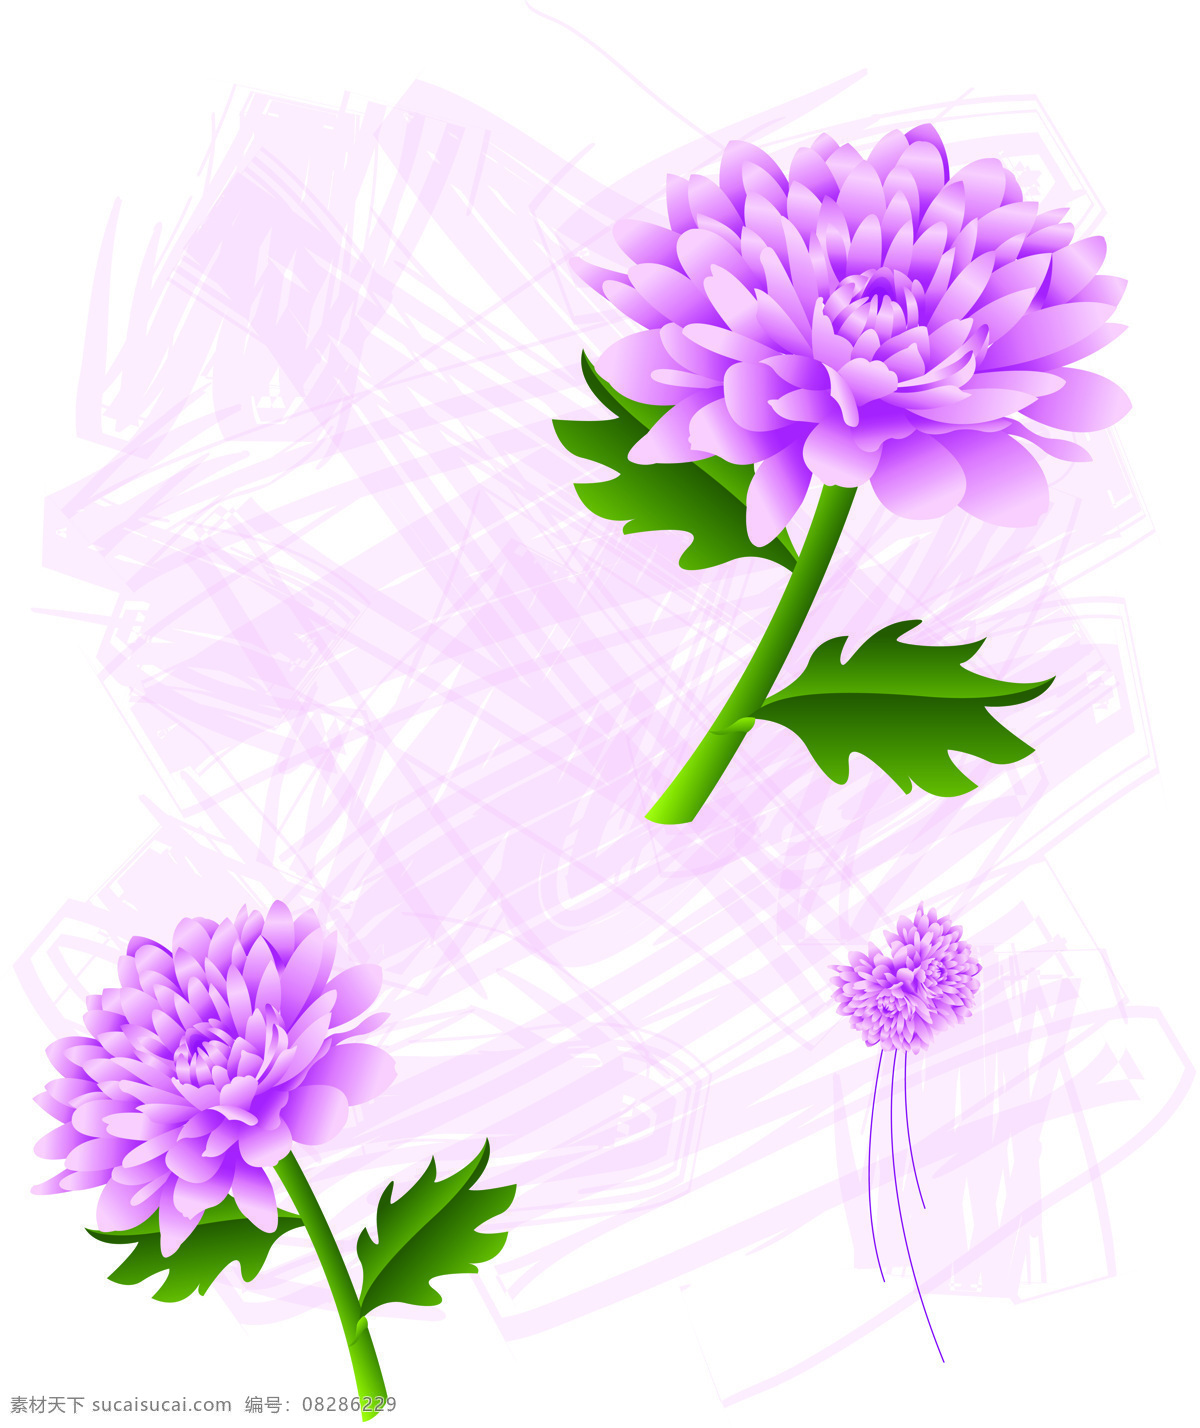 室内 移门 紫色 菊花 创意 画 移门画 花朵 效果图